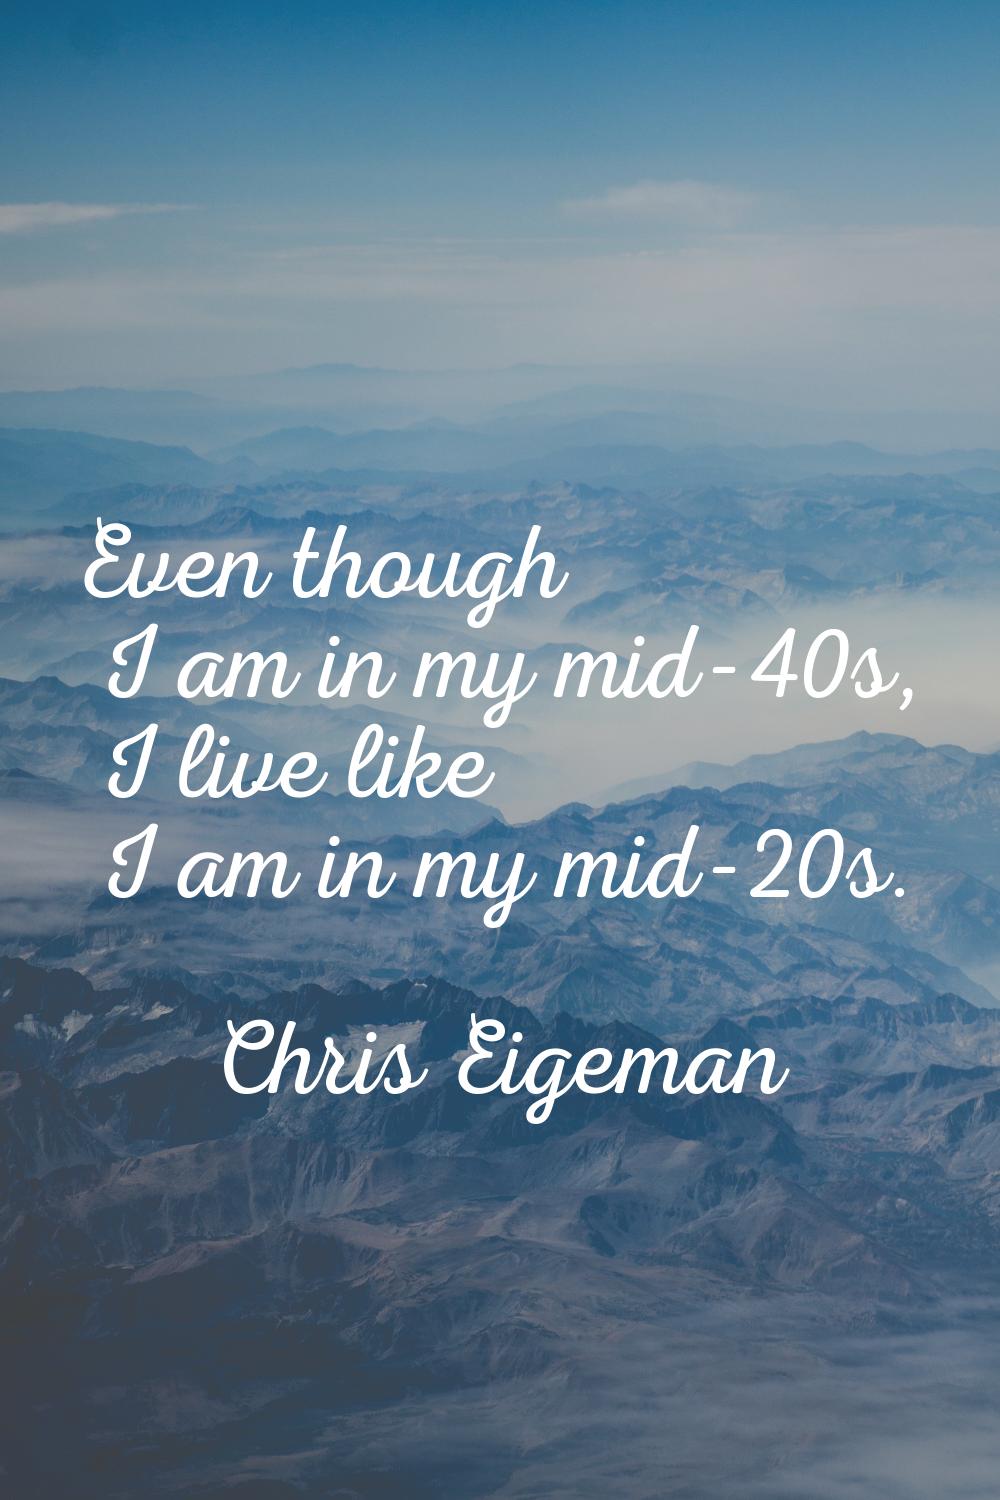 Even though I am in my mid-40s, I live like I am in my mid-20s.